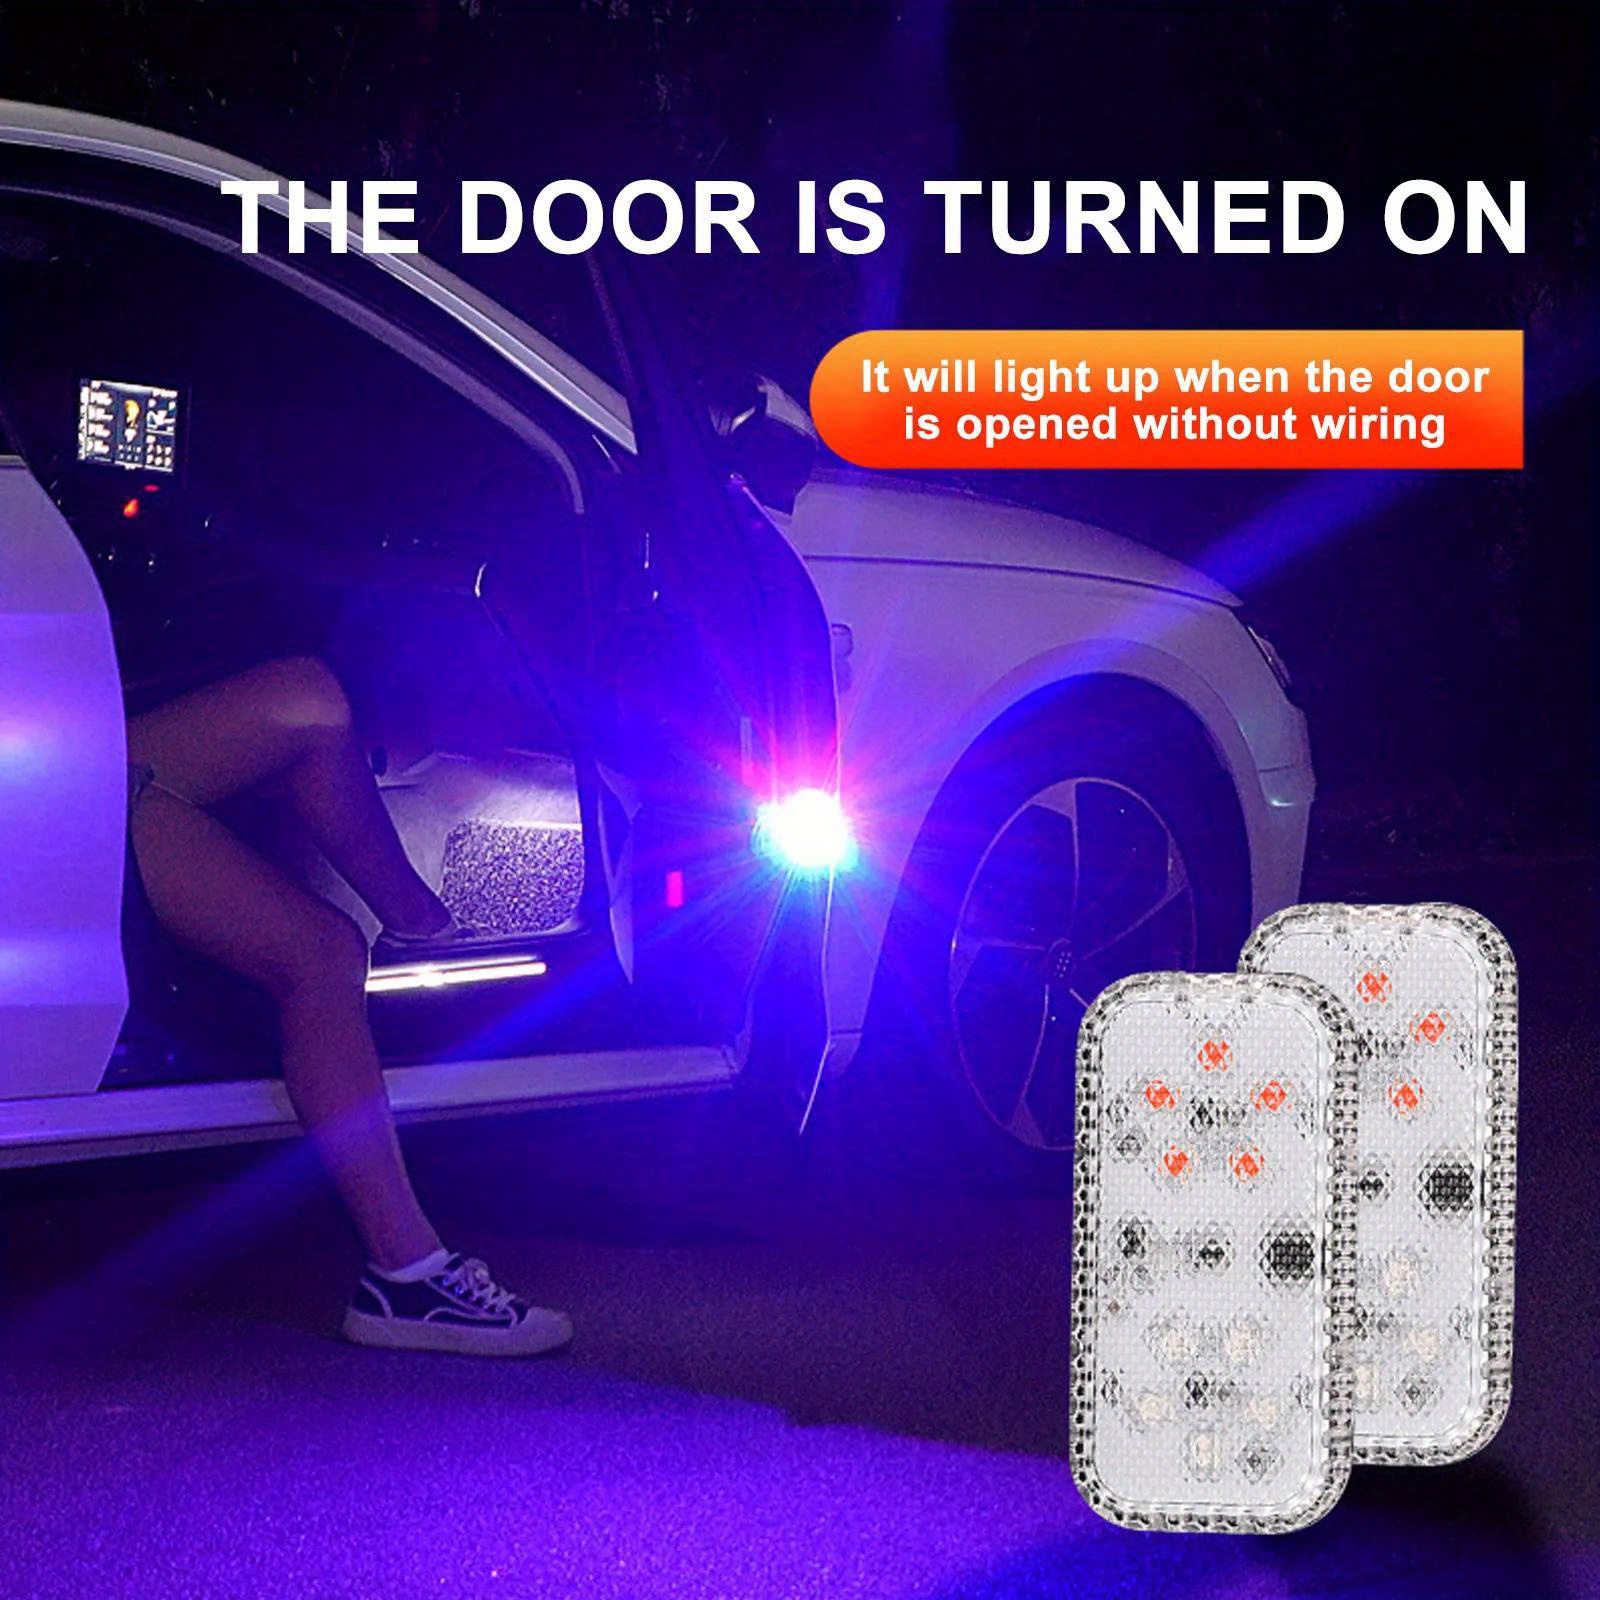 LED Auto Offenen Tür Sicherheit Warnung Anti-kollision Lichter Für